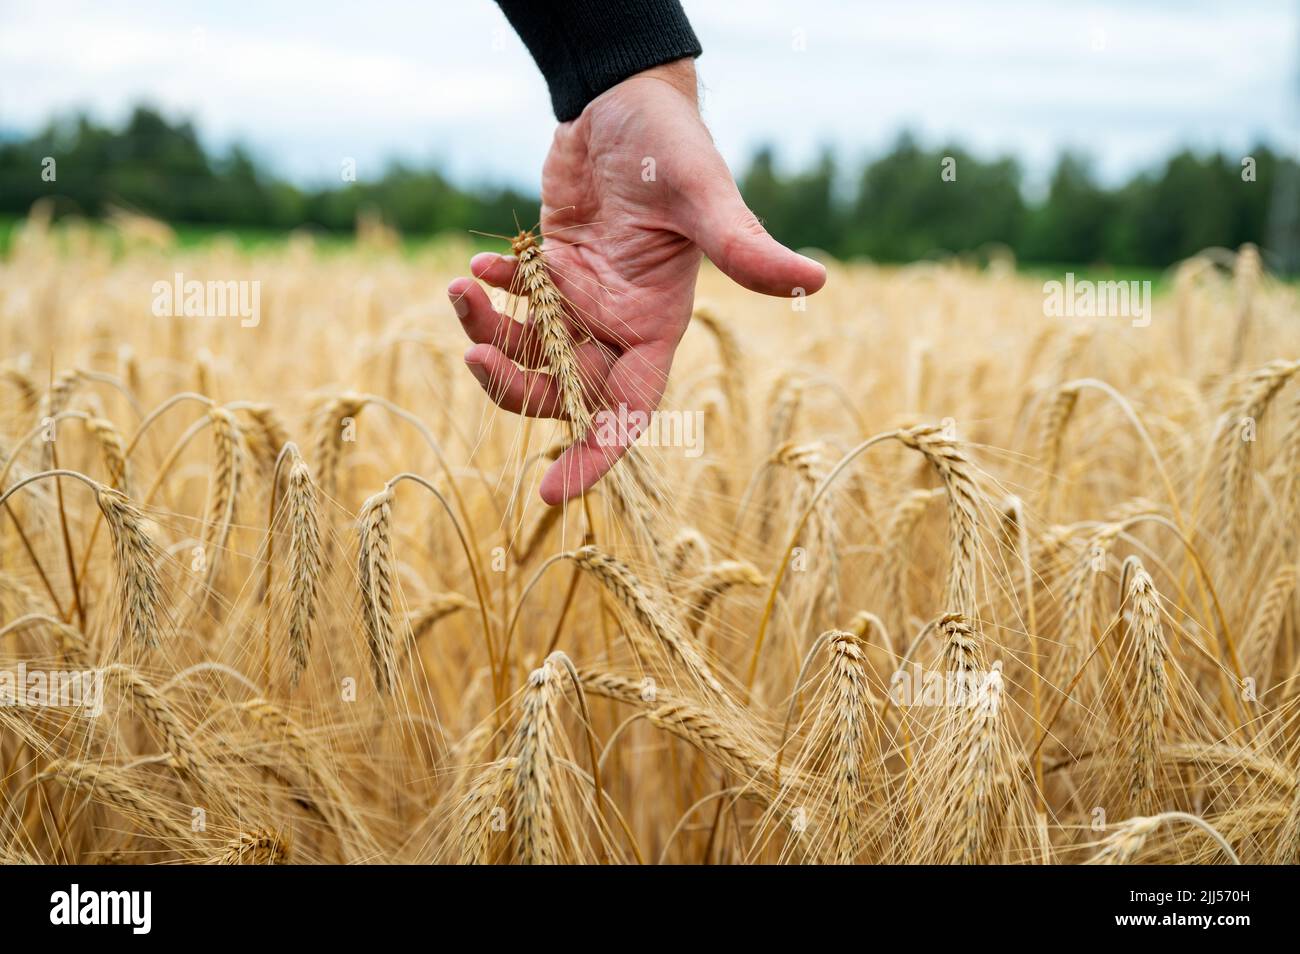 Vista de primer plano de la mano masculina que alcanza hacia abajo para tocar suavemente y golpear una oreja dorada de maduración de trigo que crece en el campo. Foto de stock